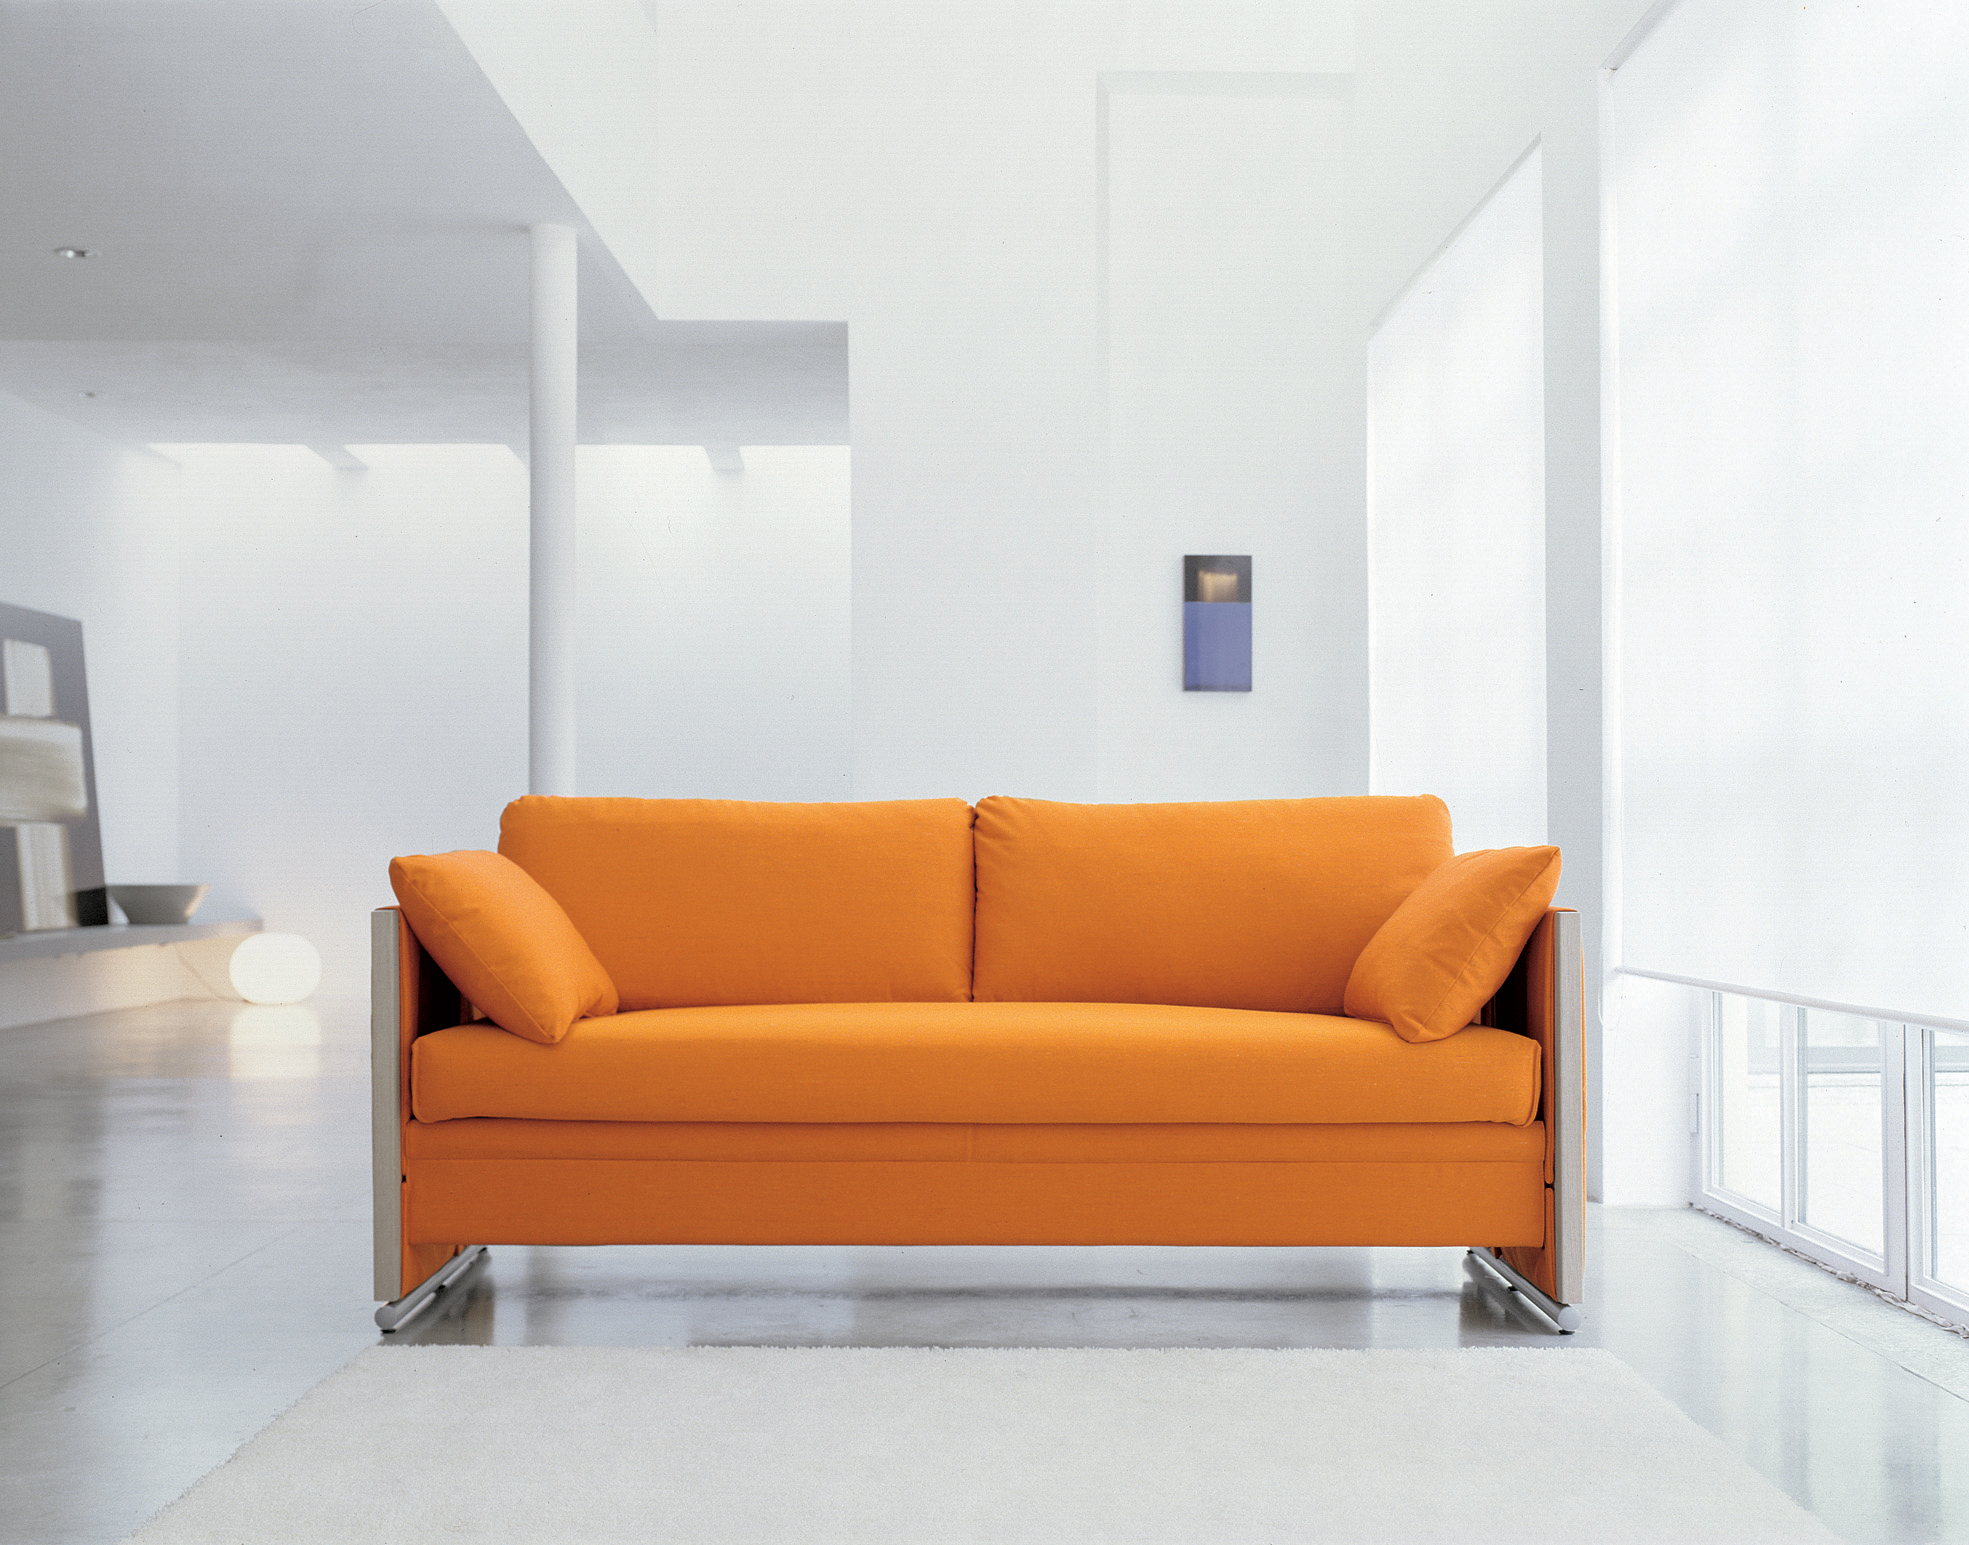 Роль мебели в интерьере квартиры | KBTM